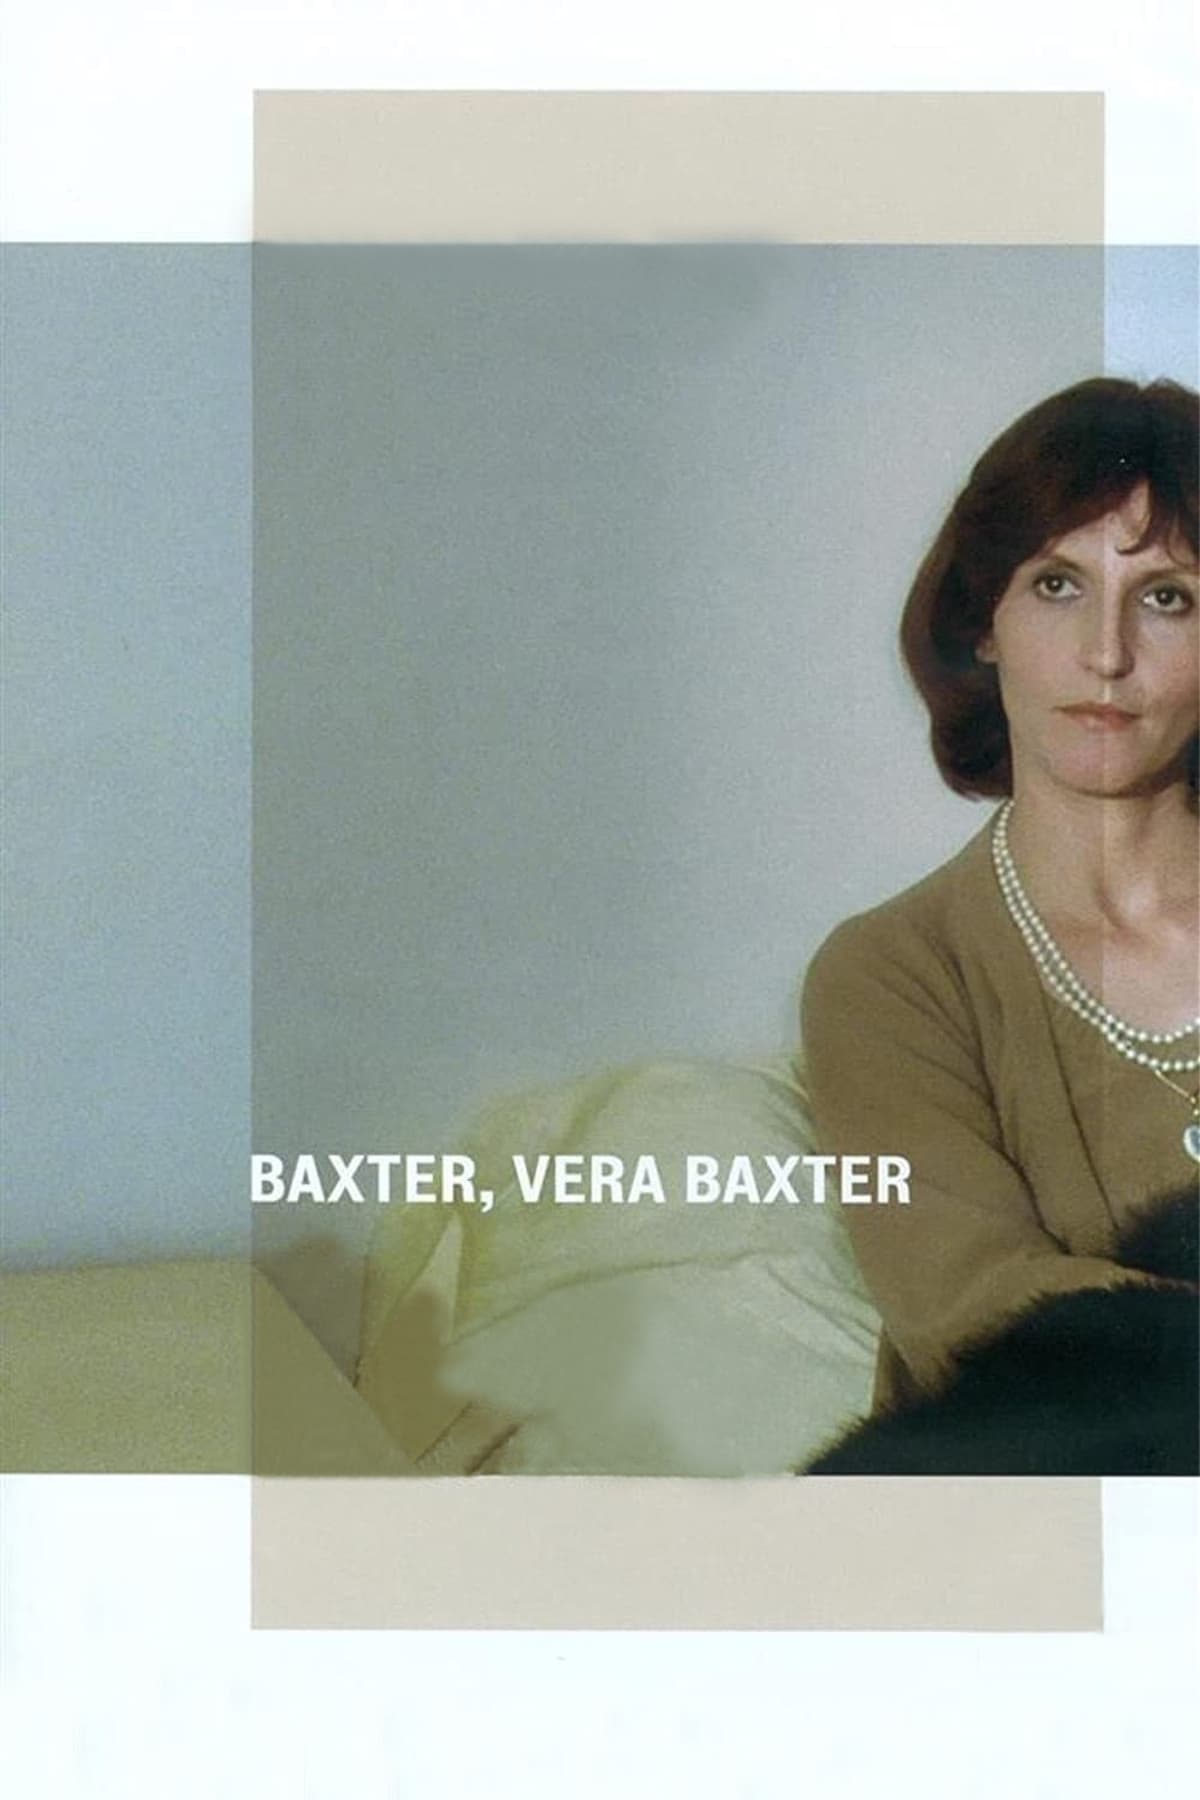 Baxter, Vera Baxter (1977)